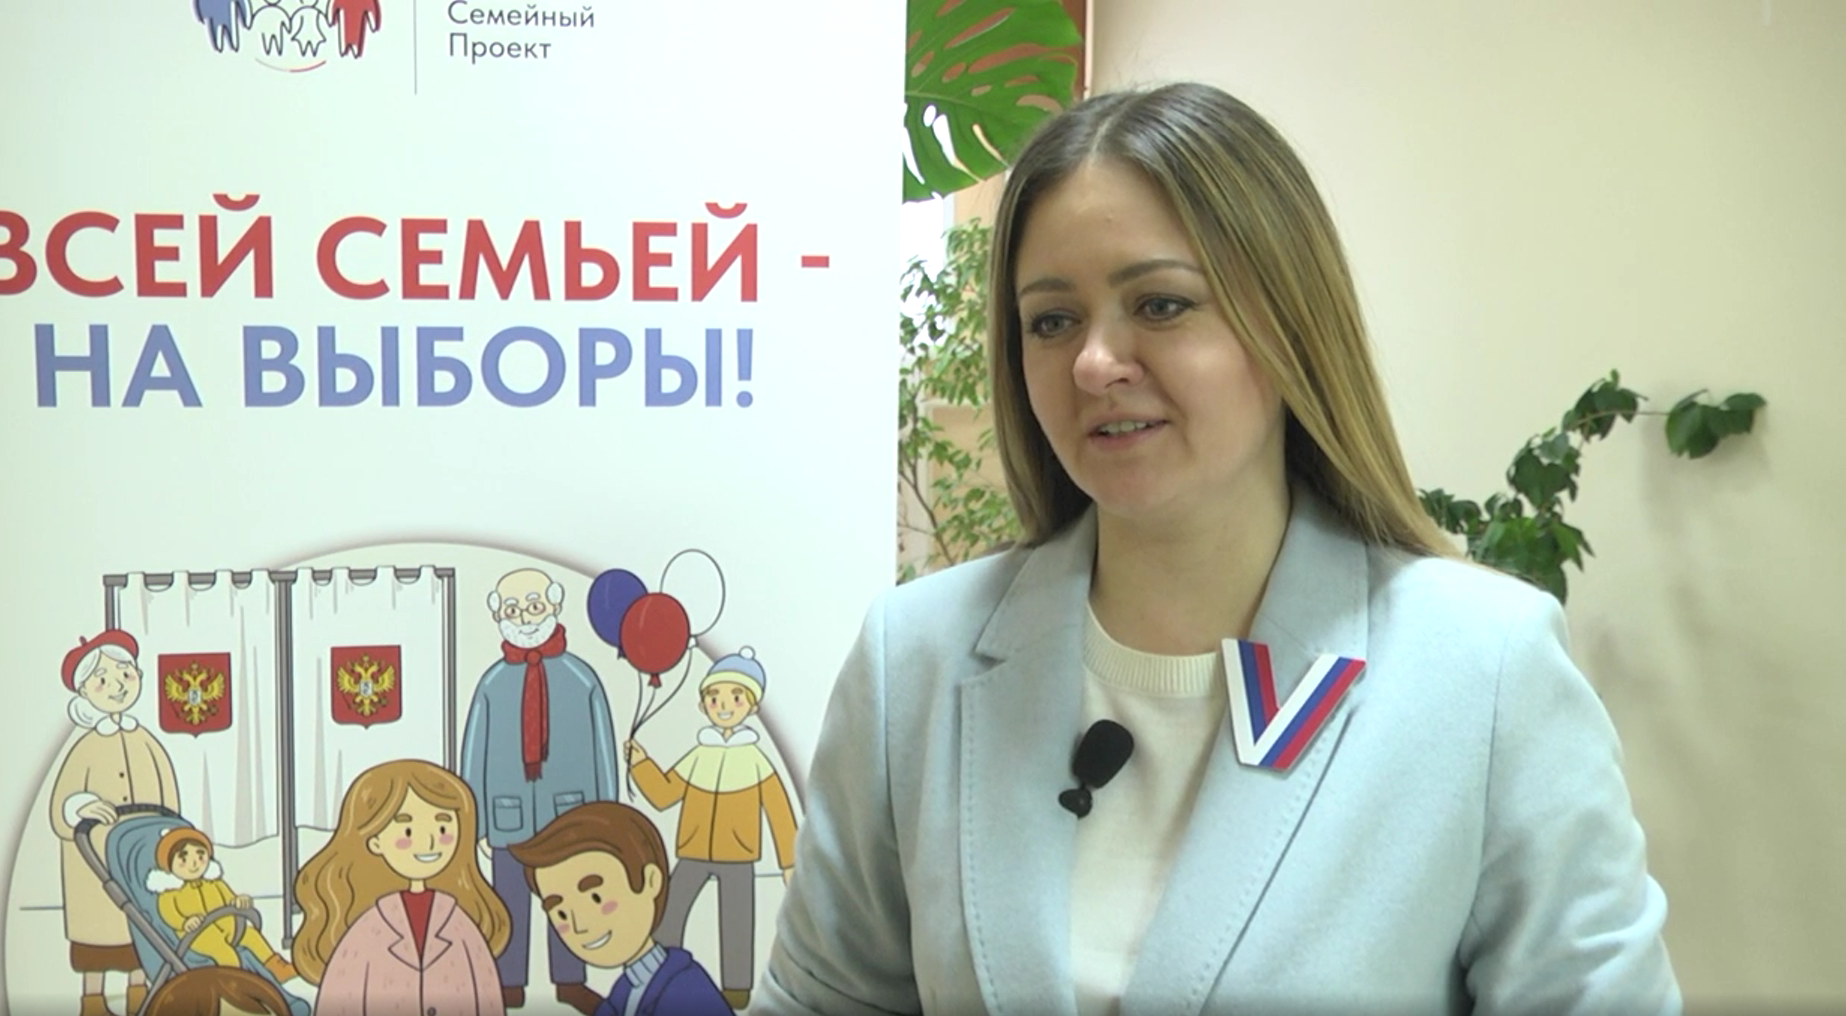 Председатель избирательной комиссии Кузбасса рассказала, что выборы значат для неё